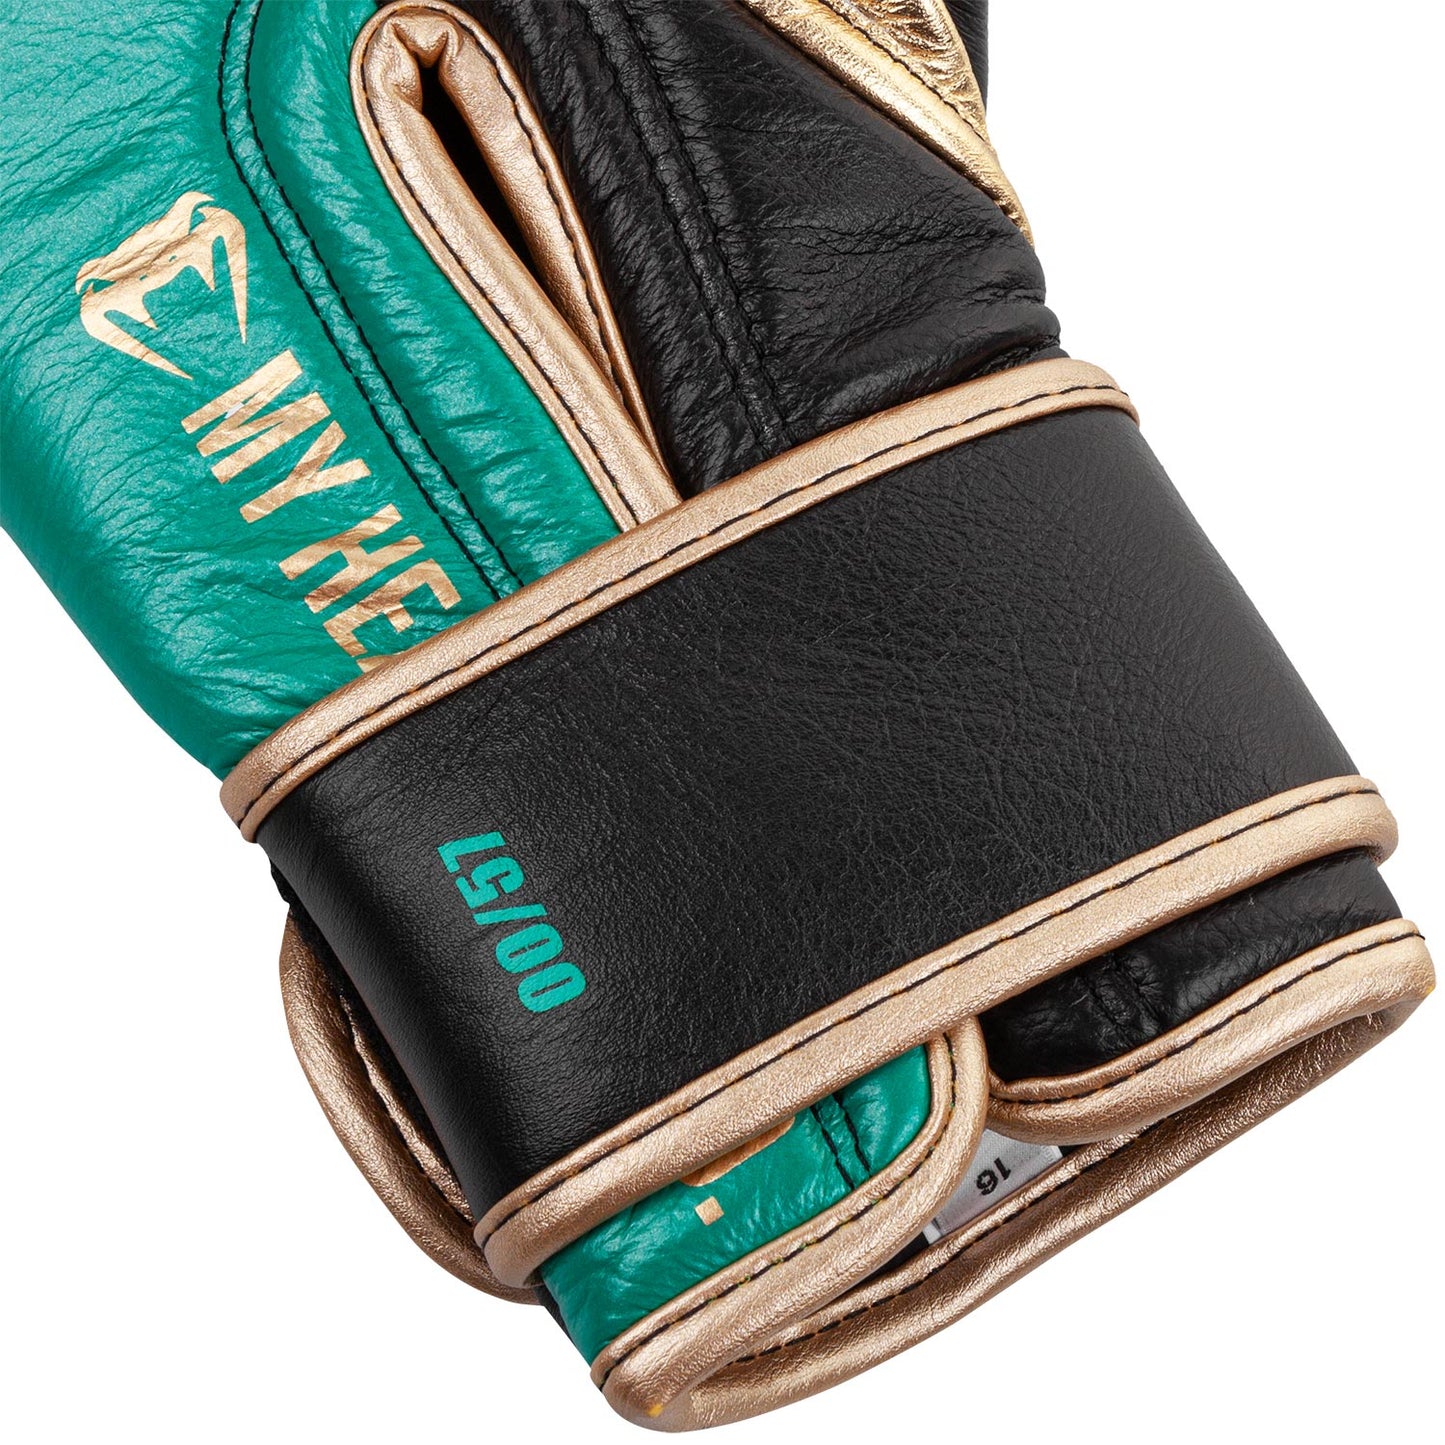 Venum Shield professionelle Boxhandschuhe - WBC limitierte Auflage - Klettverschluss - Metallicgrün/Gold